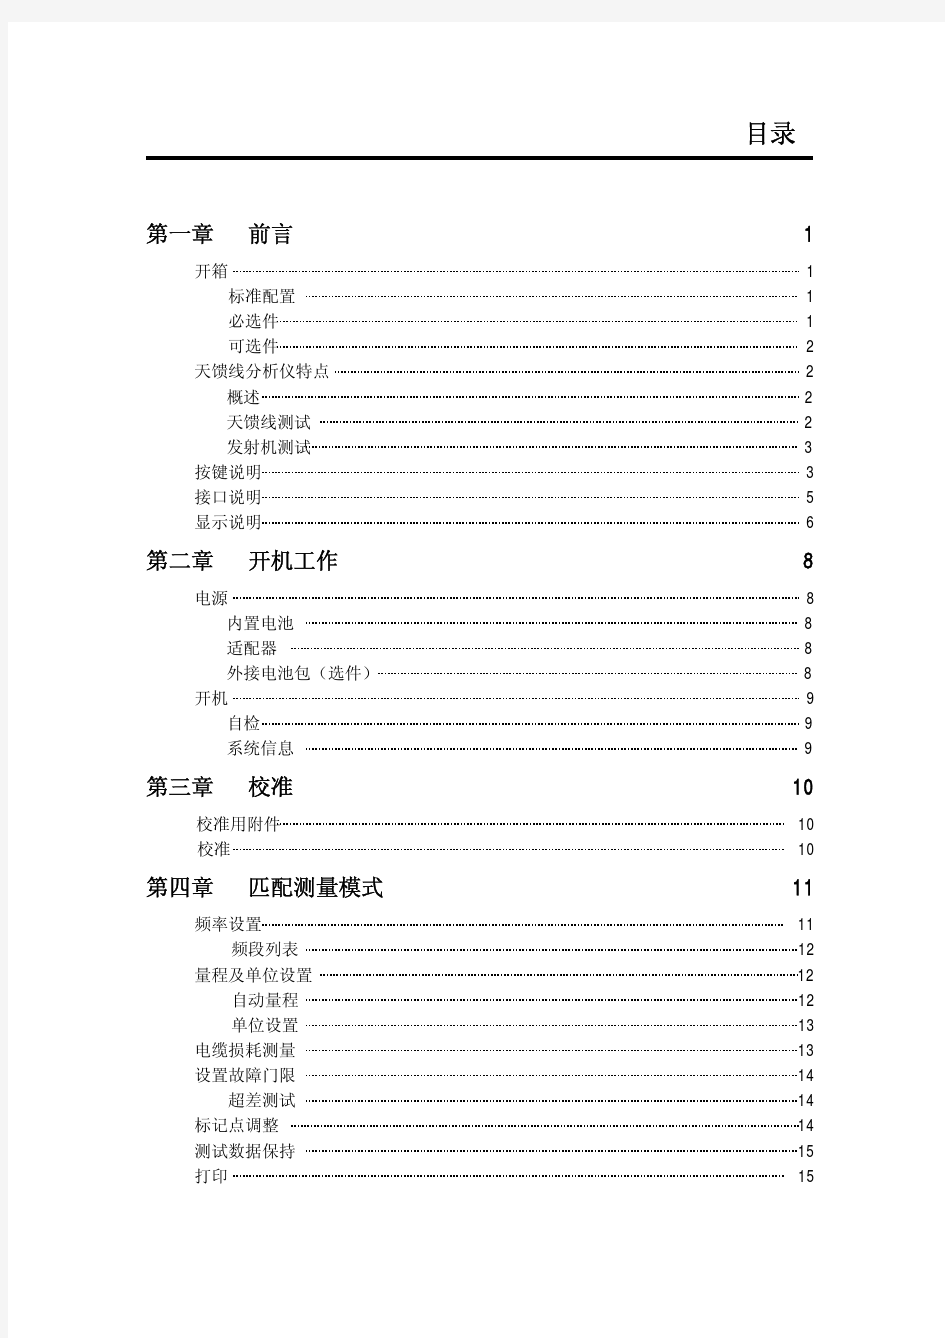 驻波比测试仪中文说明书.pdf